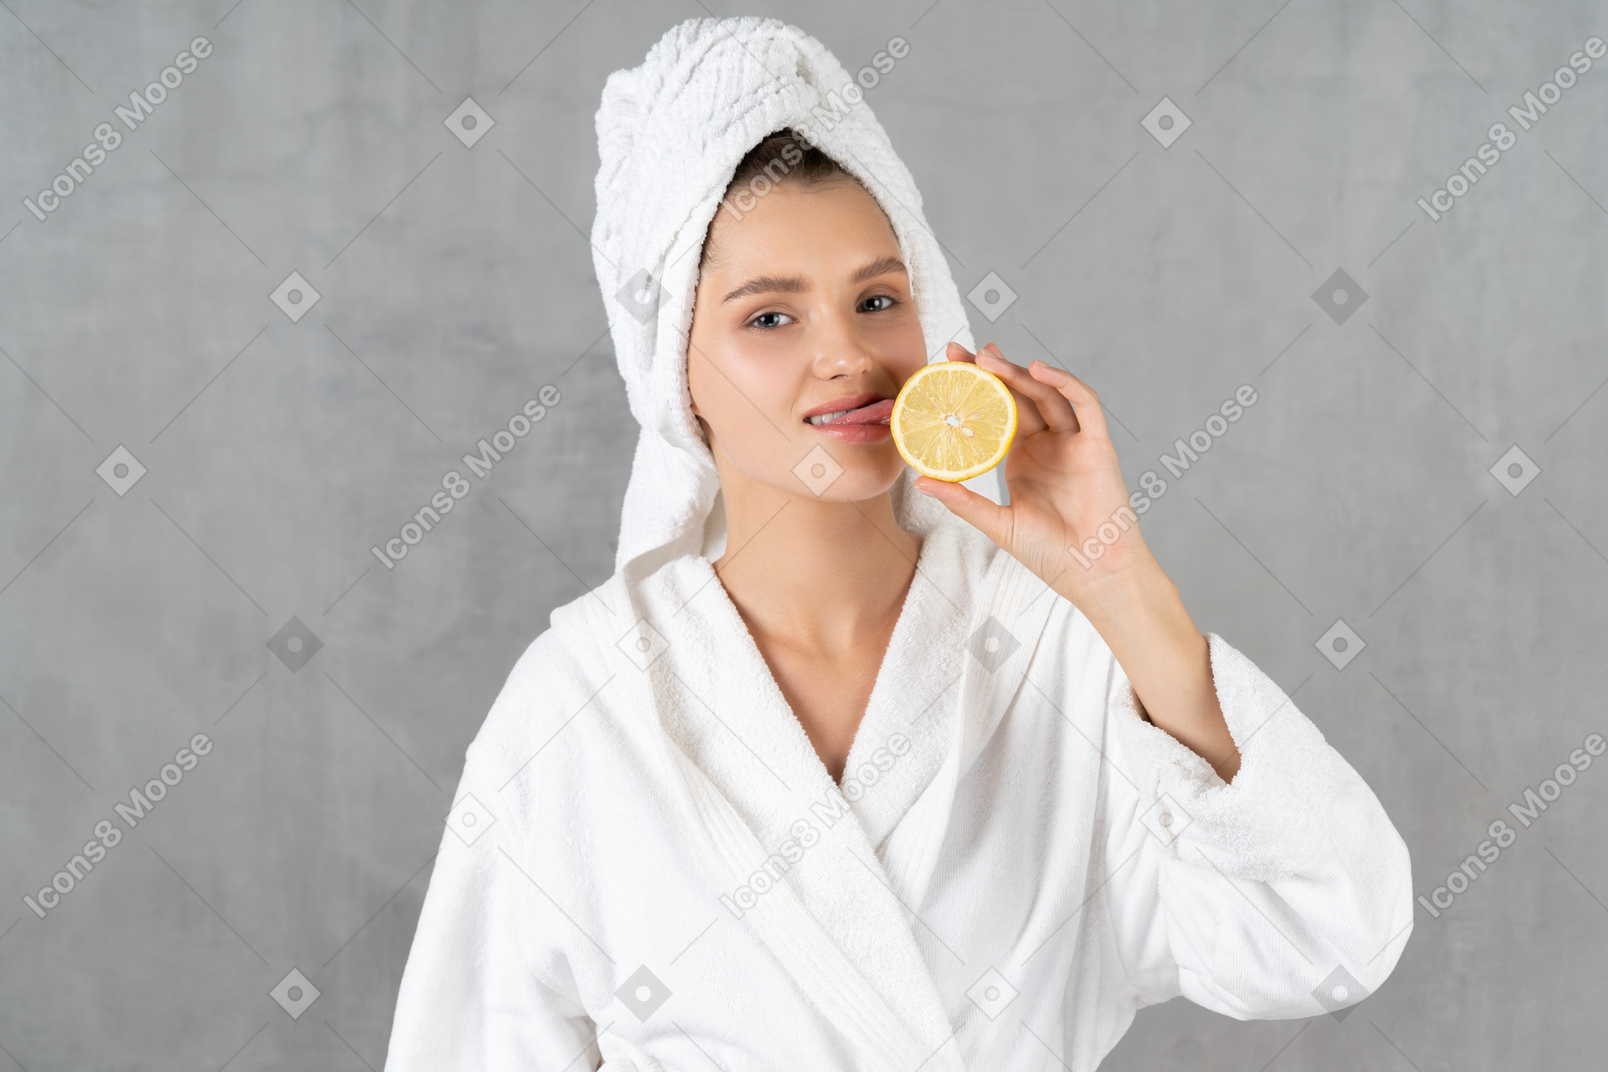 Cheerful woman in bathrobe licking a lemon